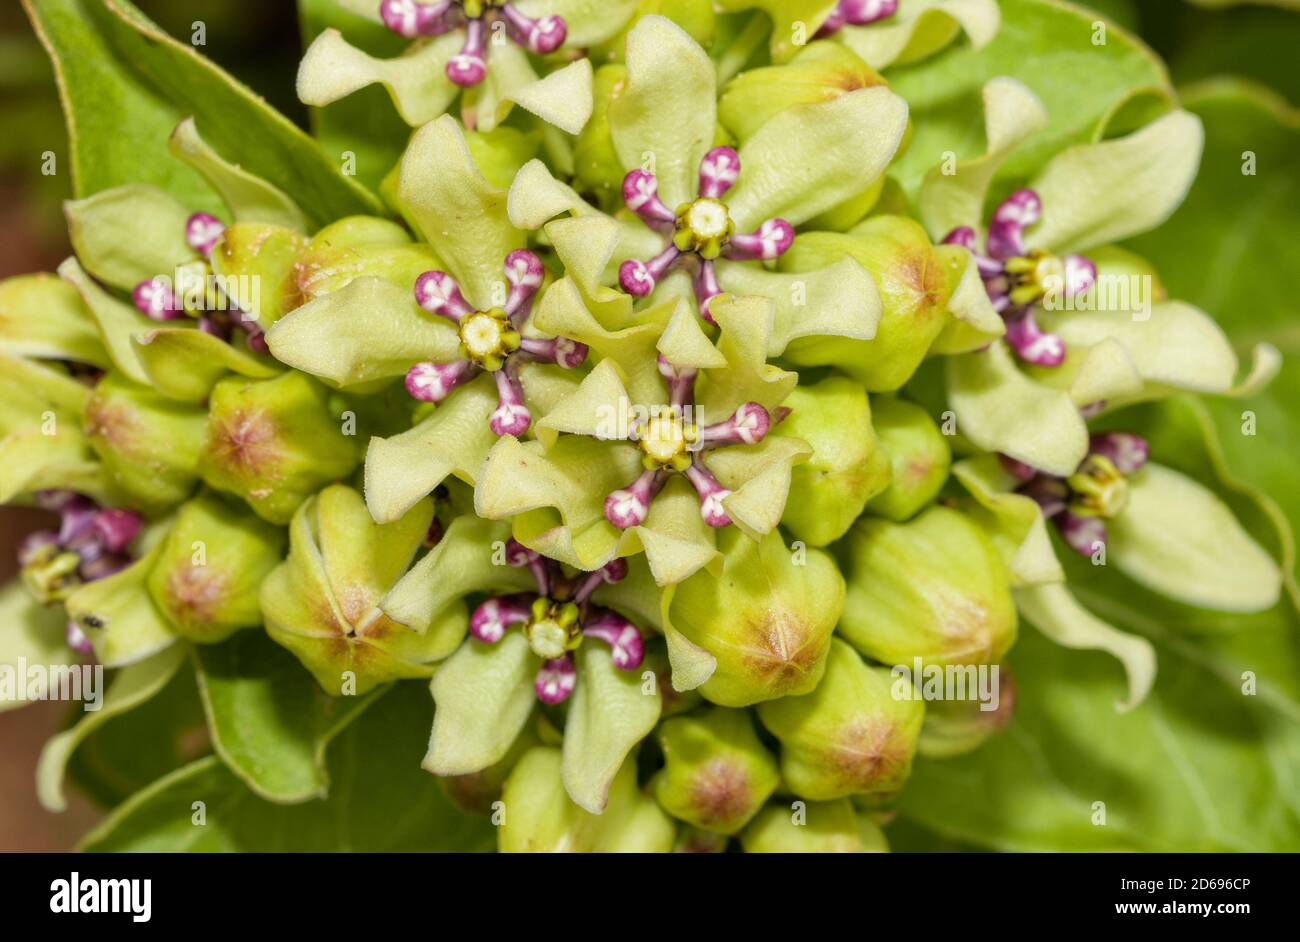 Gros plan de fleurs de milkaded vert d'antilopette, une plante hôte importante pour les chenilles de papillon Monarch Banque D'Images